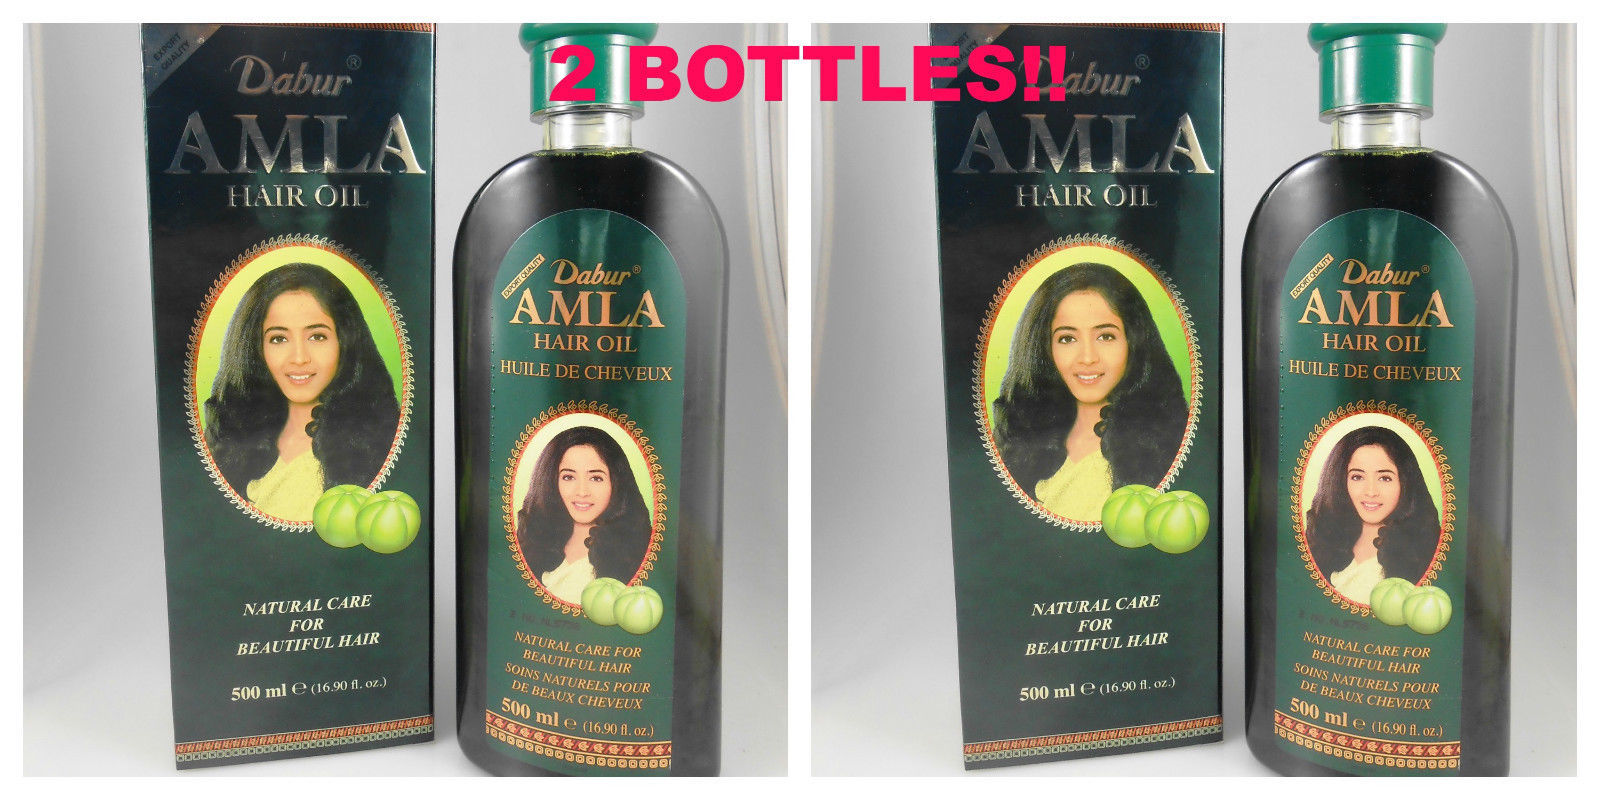 2 Bottles Dabur Original Amla Hair Oil 500ml Gossberry Oil - $21.50